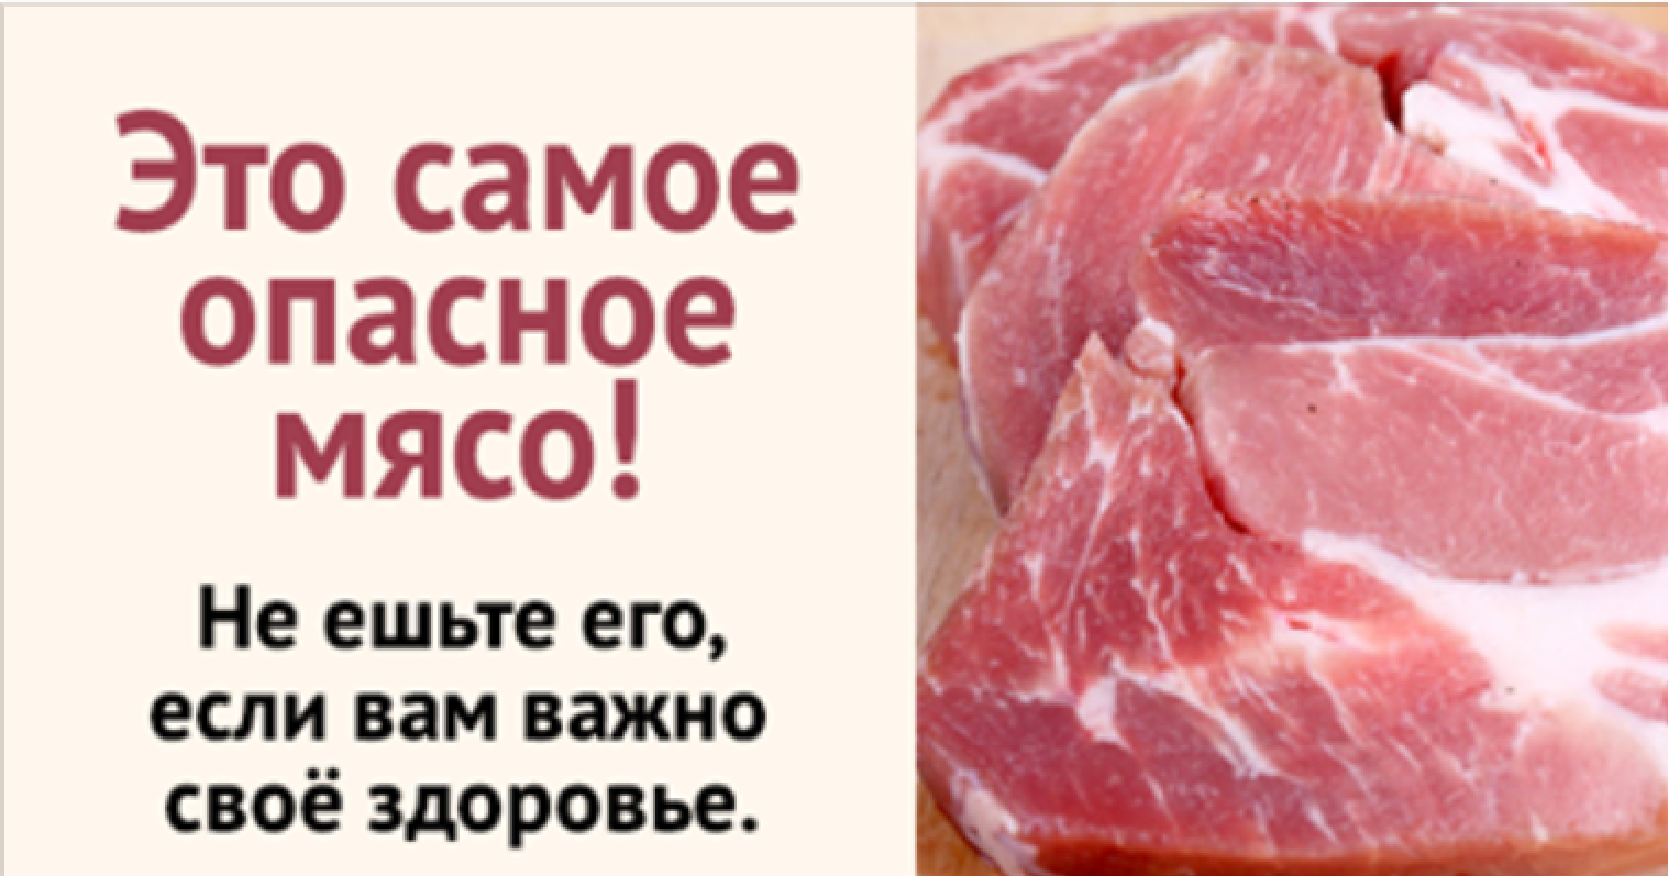 Что будет есть съесть сырое мясо. Полезность мяса. Свинина опасна для здоровья.